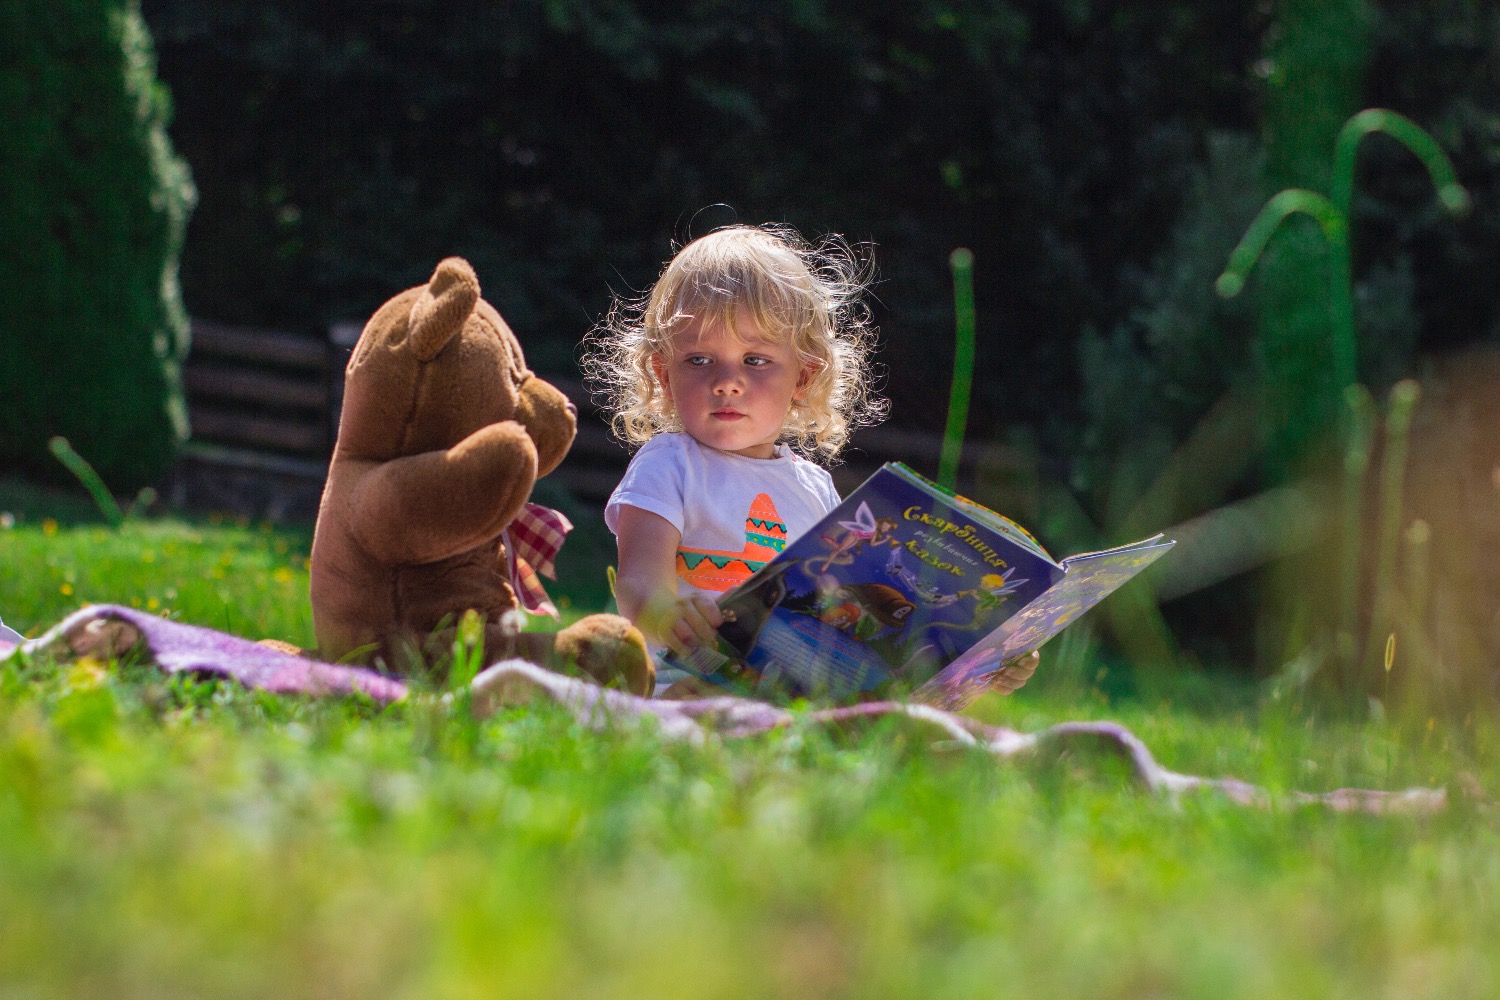 Titelbild zur Idee für die Beschäftigung mit Kindern '(40) Dem Bären eine Geschichte vorlesen'